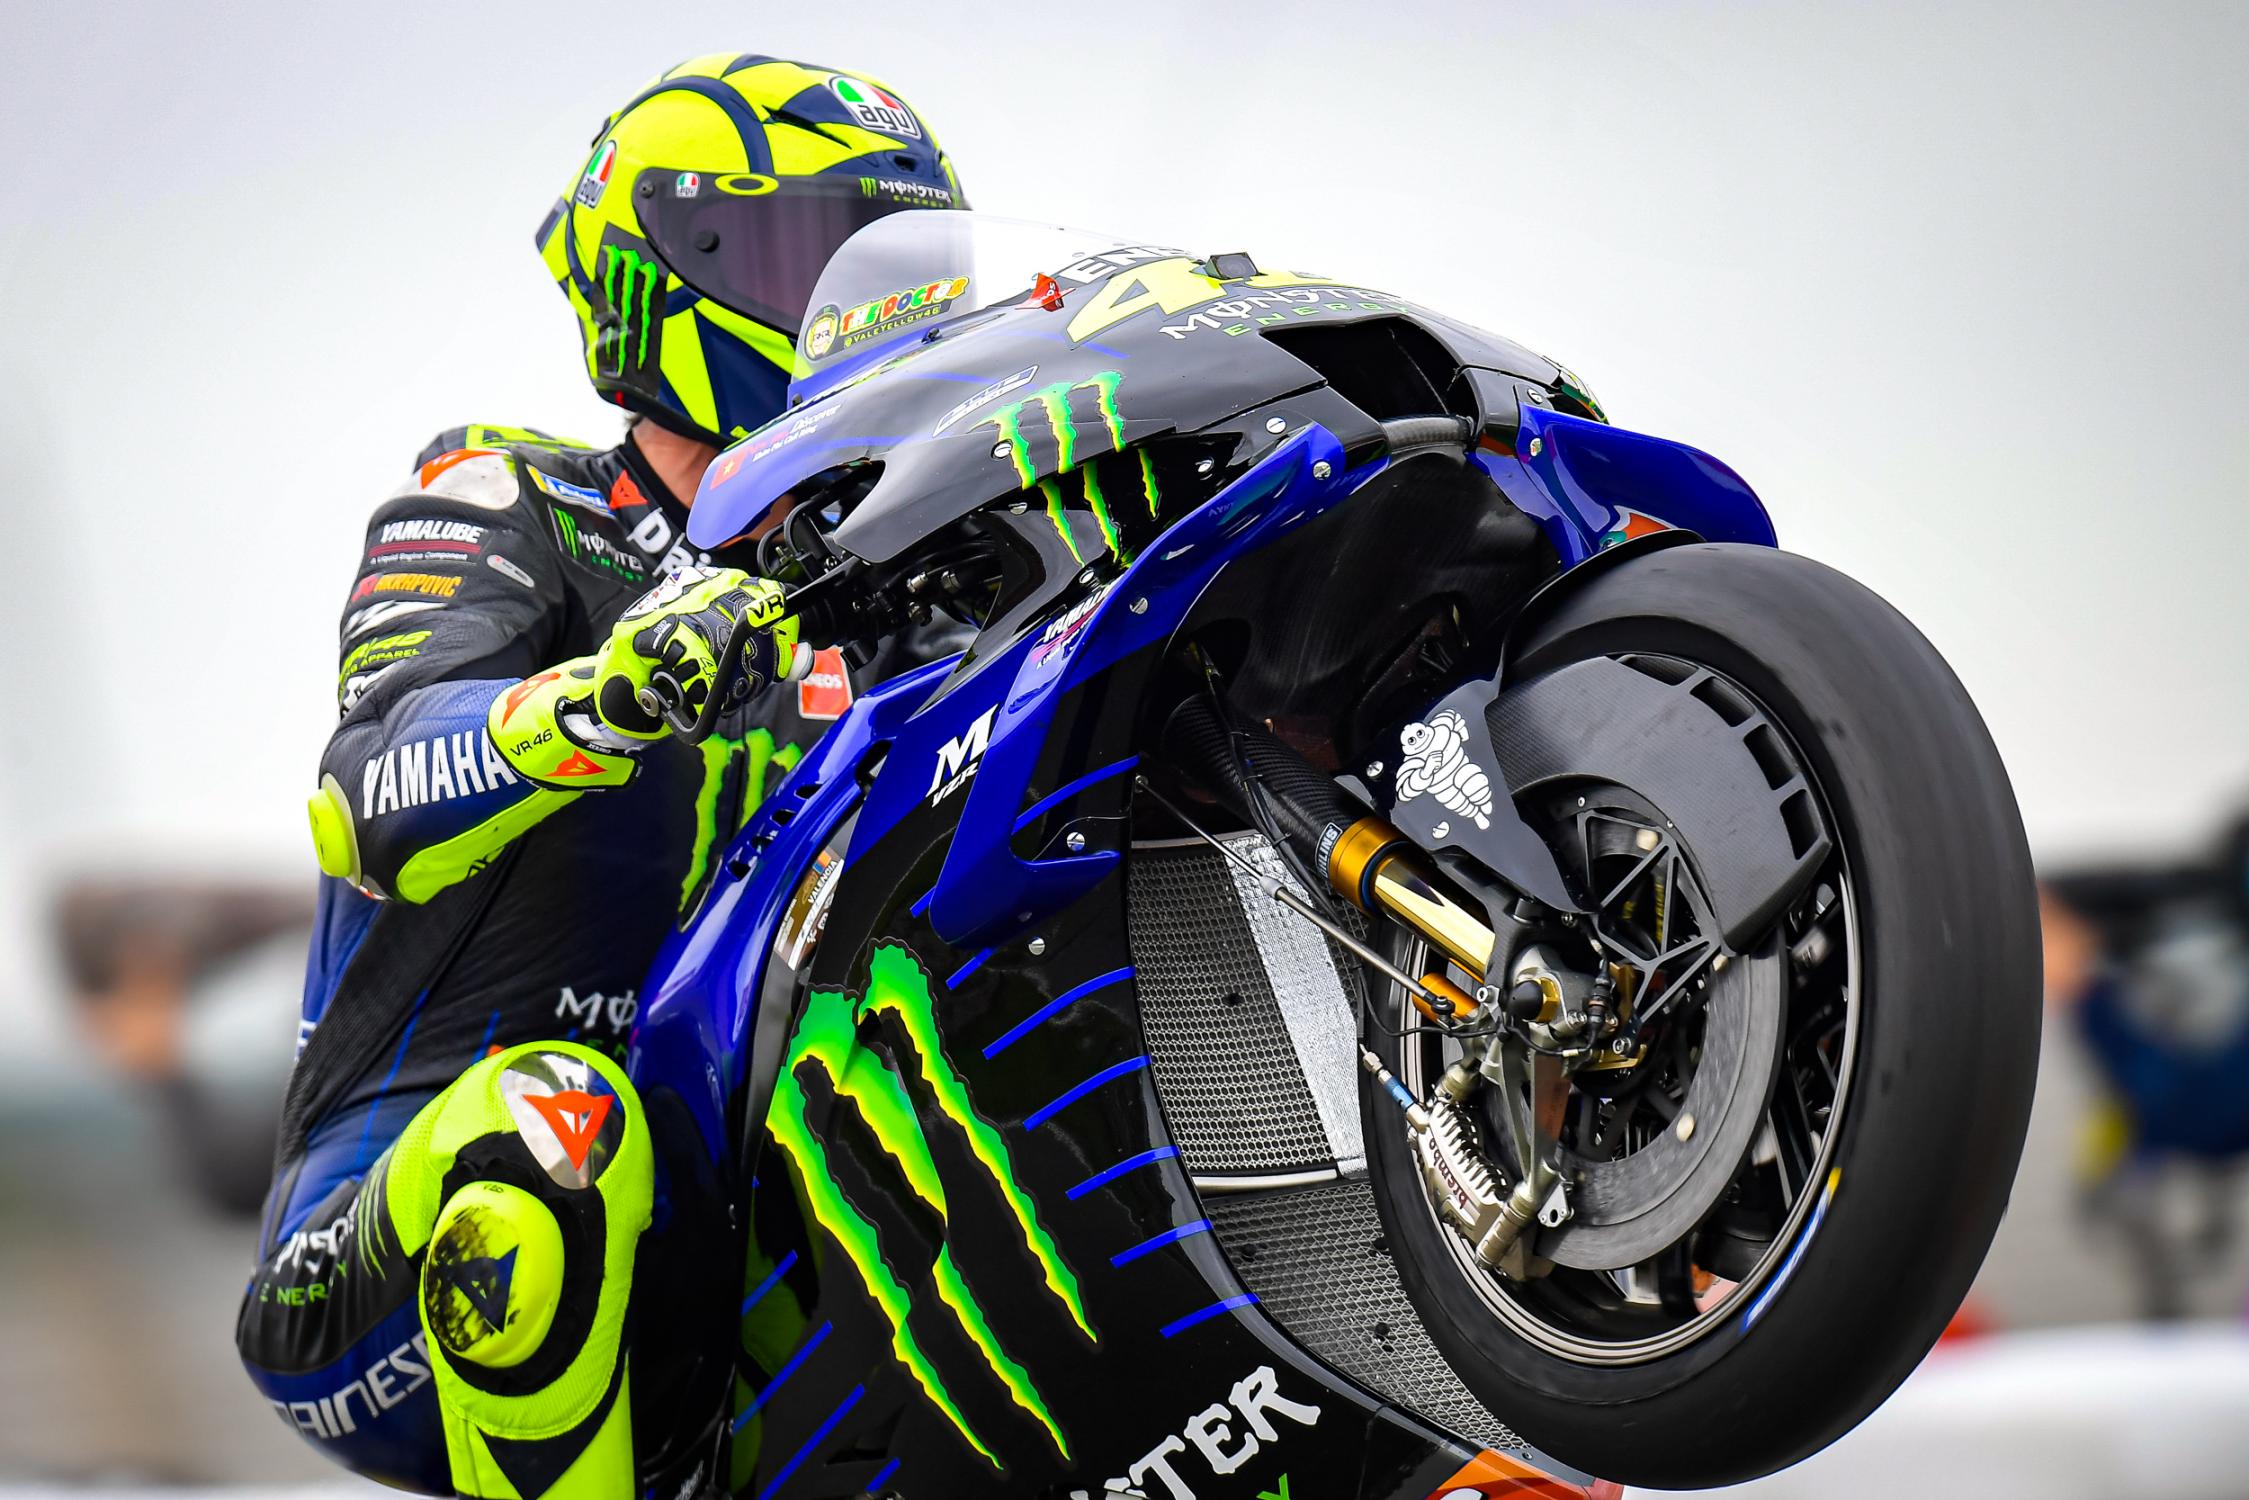 MotoGP, 2020: Rossi, o começo do fim? - MotoSport - MotoSport